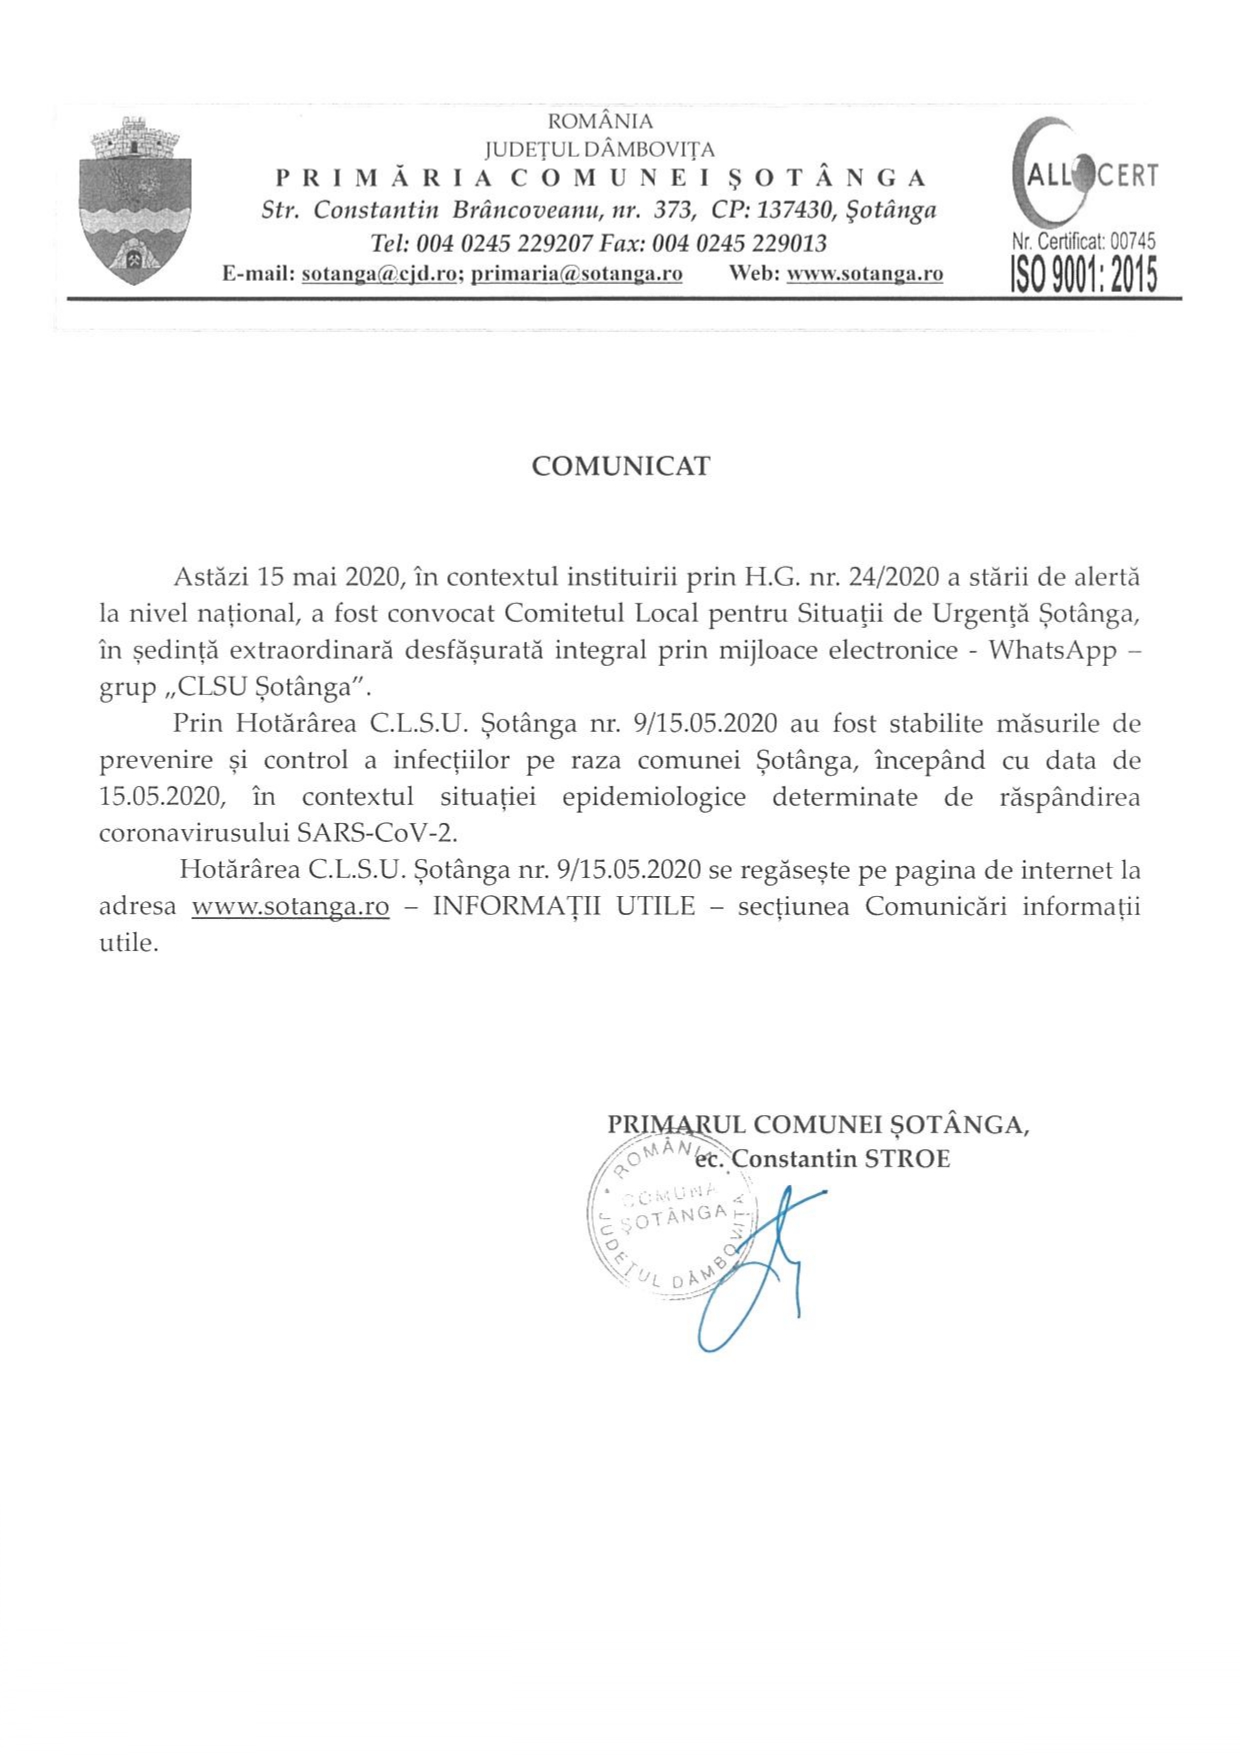 COMUNICAT al Primarului comunei Șotânga din data de 15 mai 2020